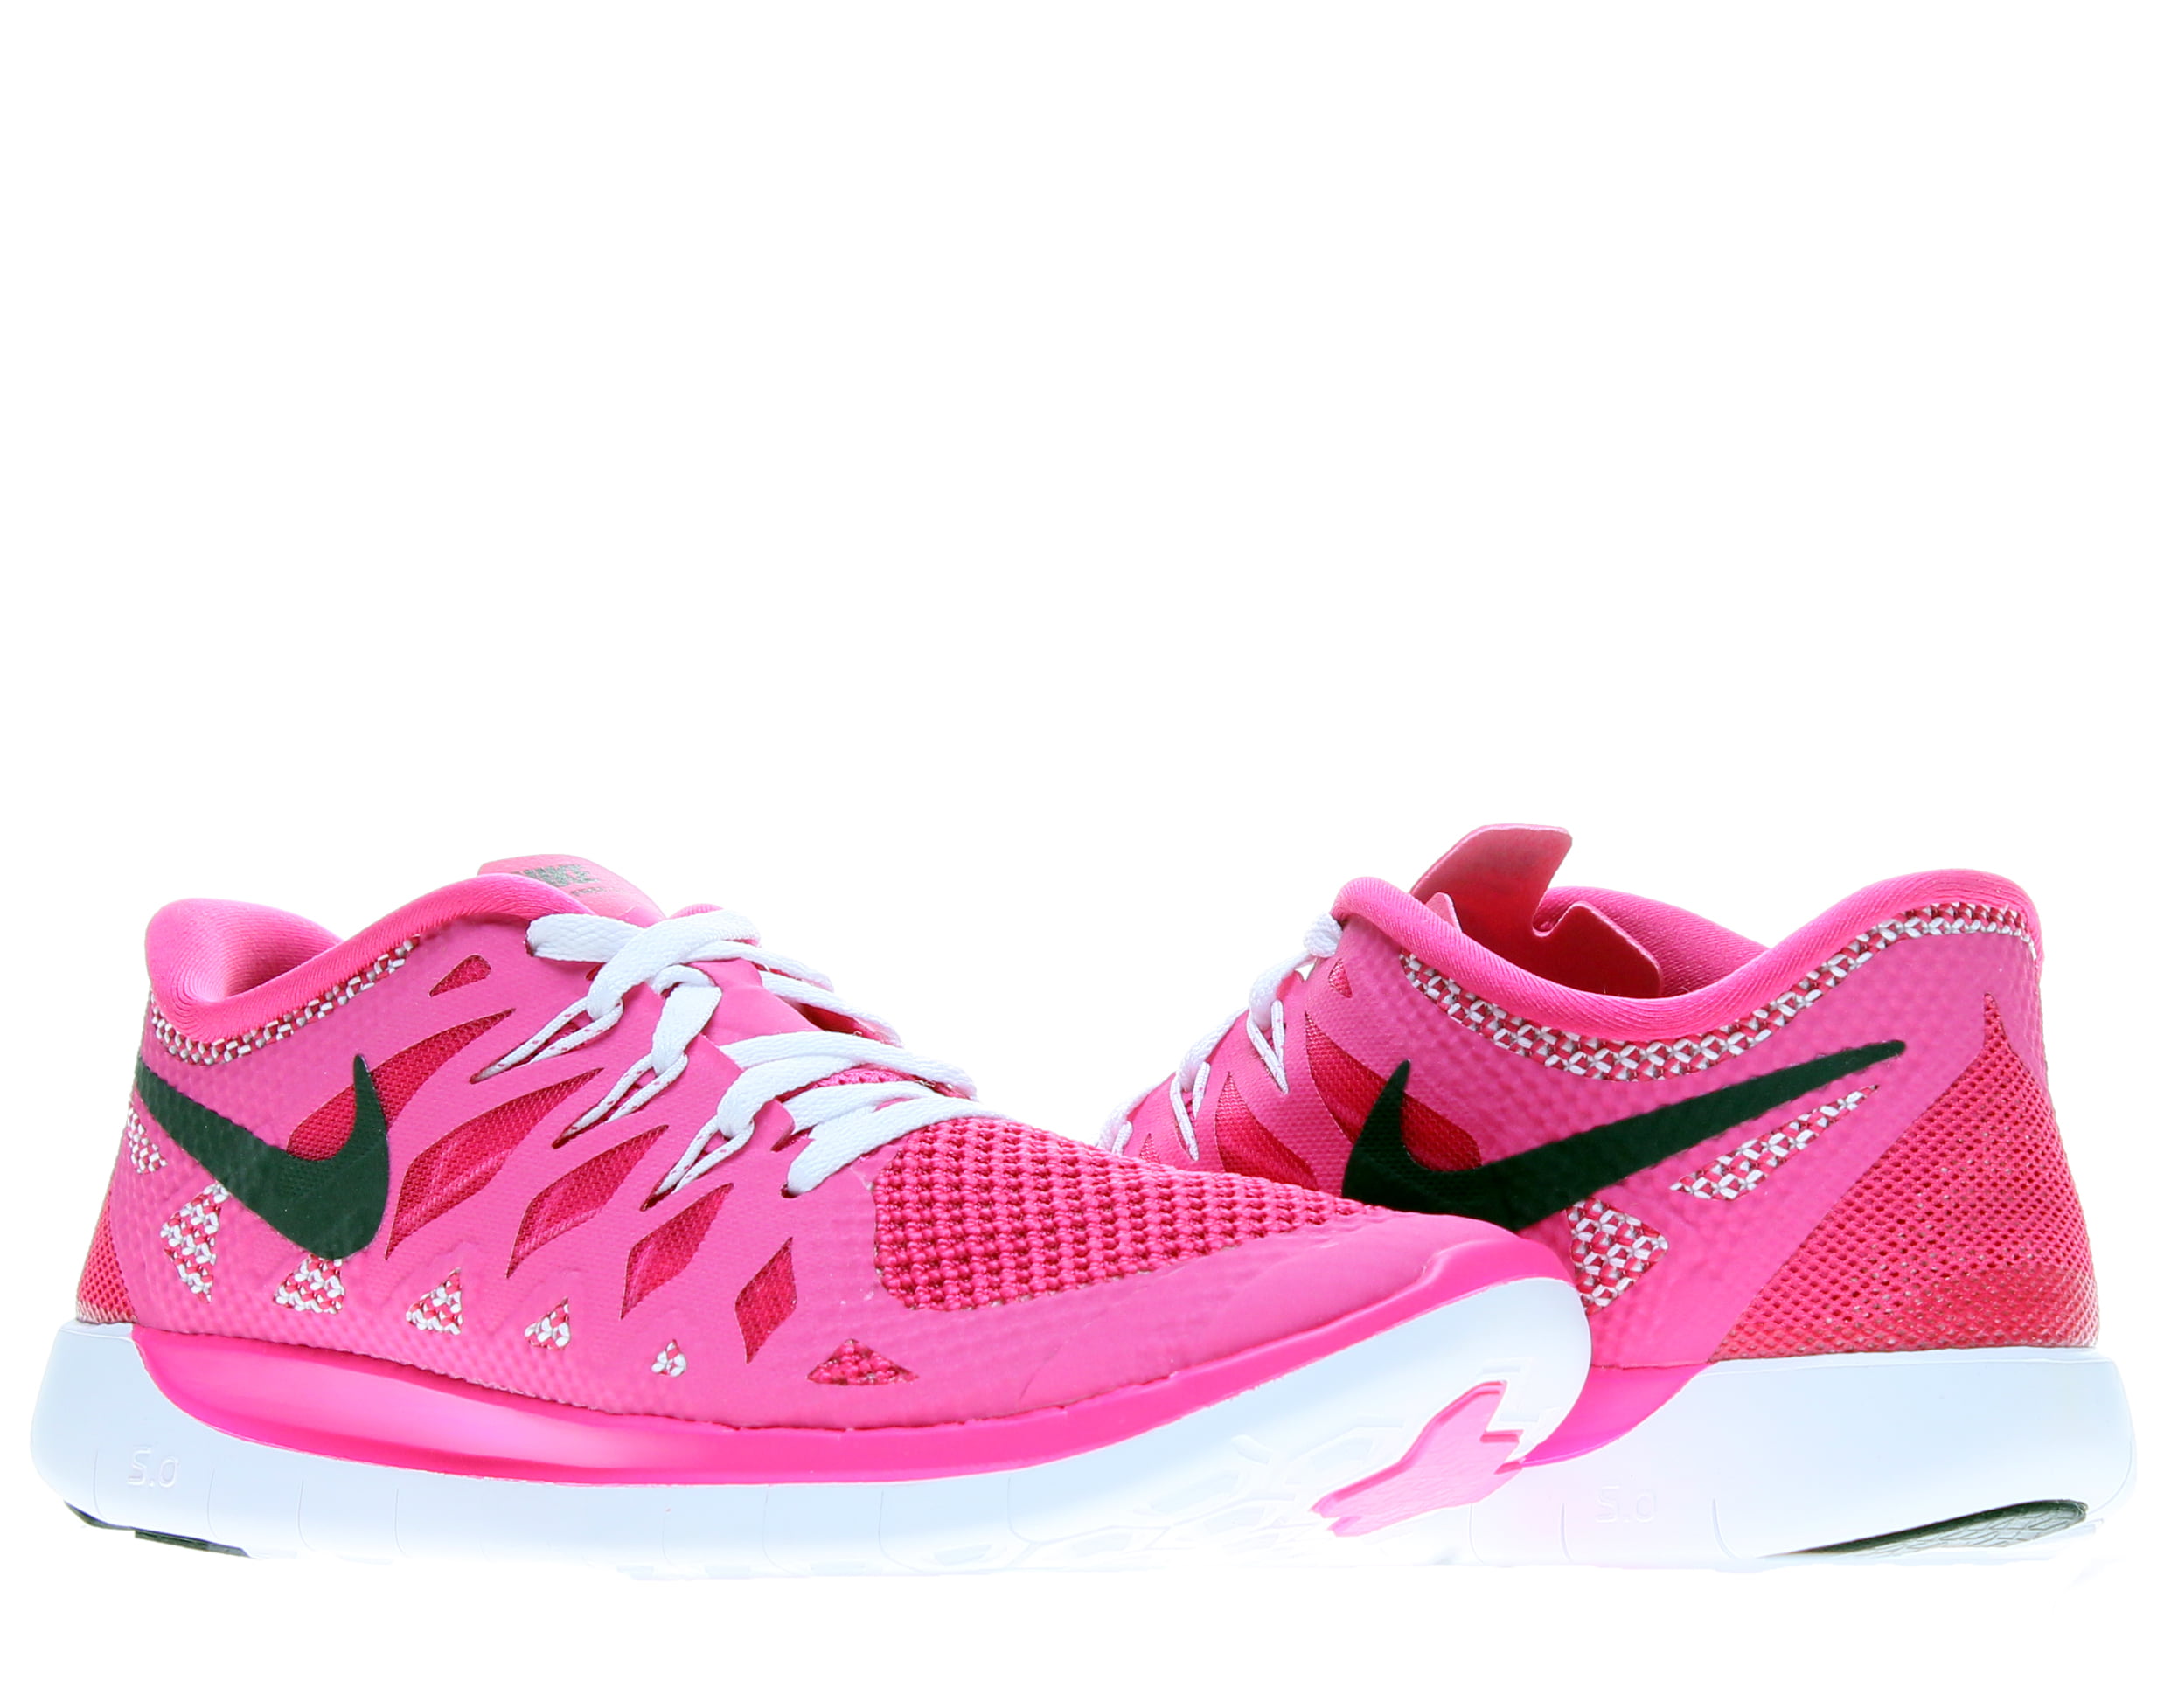 Nike Free 5.0 (GS) Hot Pink/White-Black 